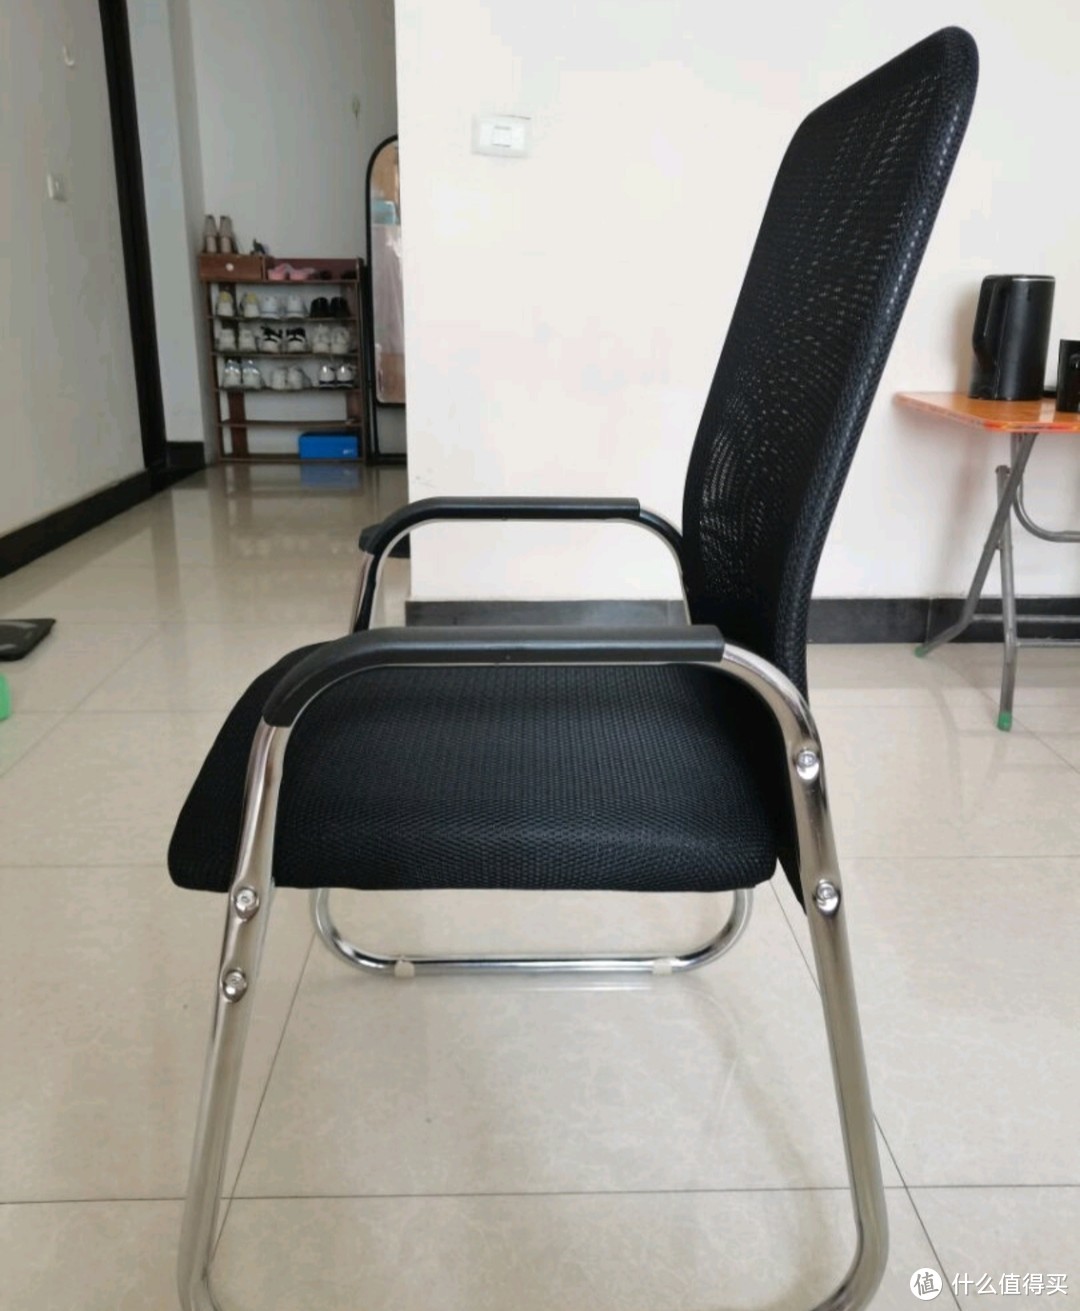 煜柠苑 电脑椅子学生宿舍凳子座椅舒适久坐靠背椅会议室办公椅家用学习椅 透气网布款-黑色-电镀架